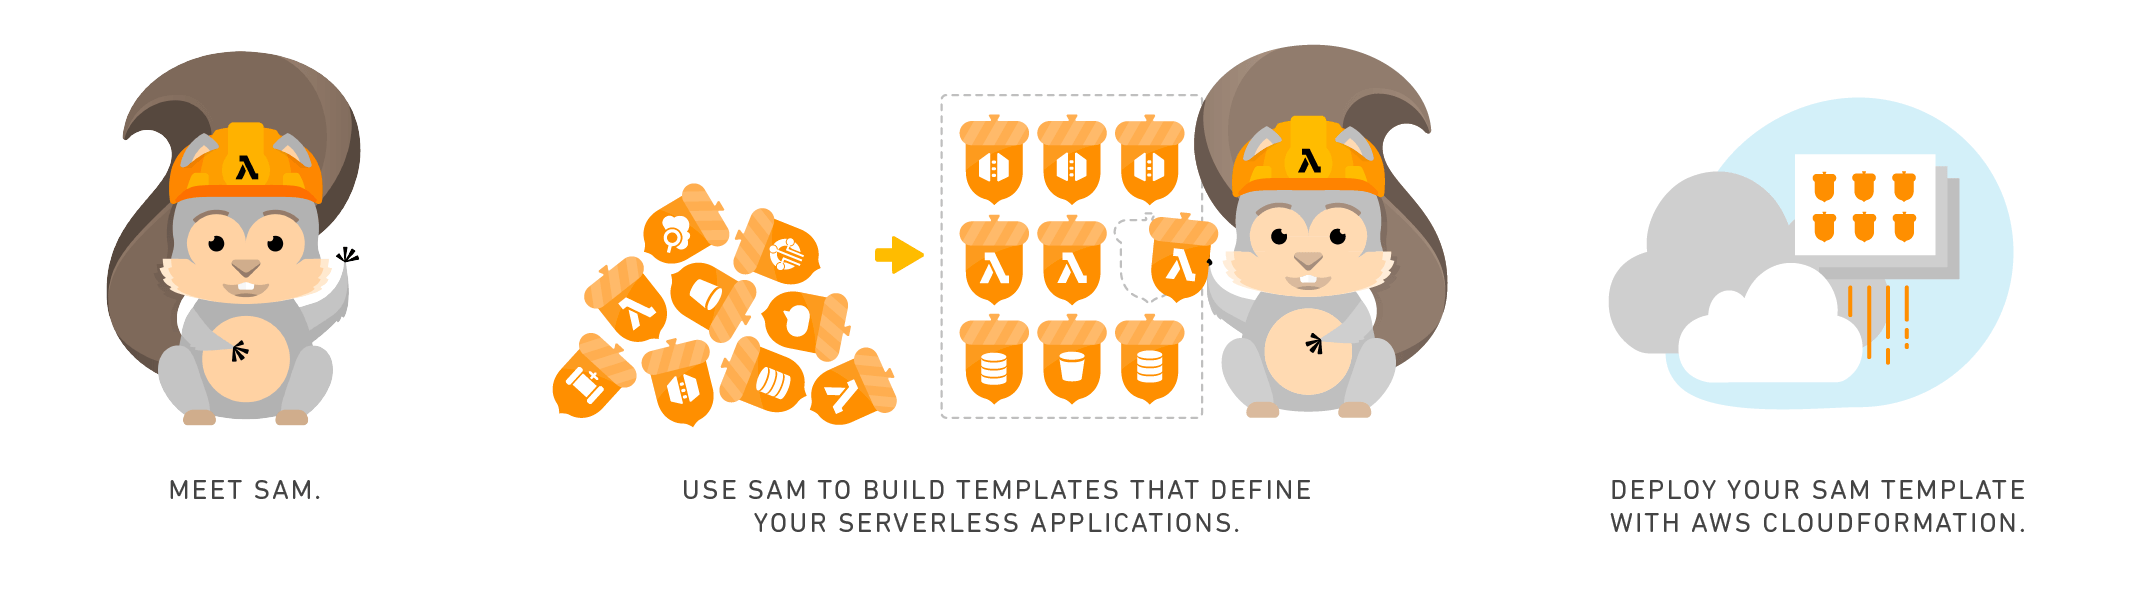 AWS Serverless Application Model (SAM)